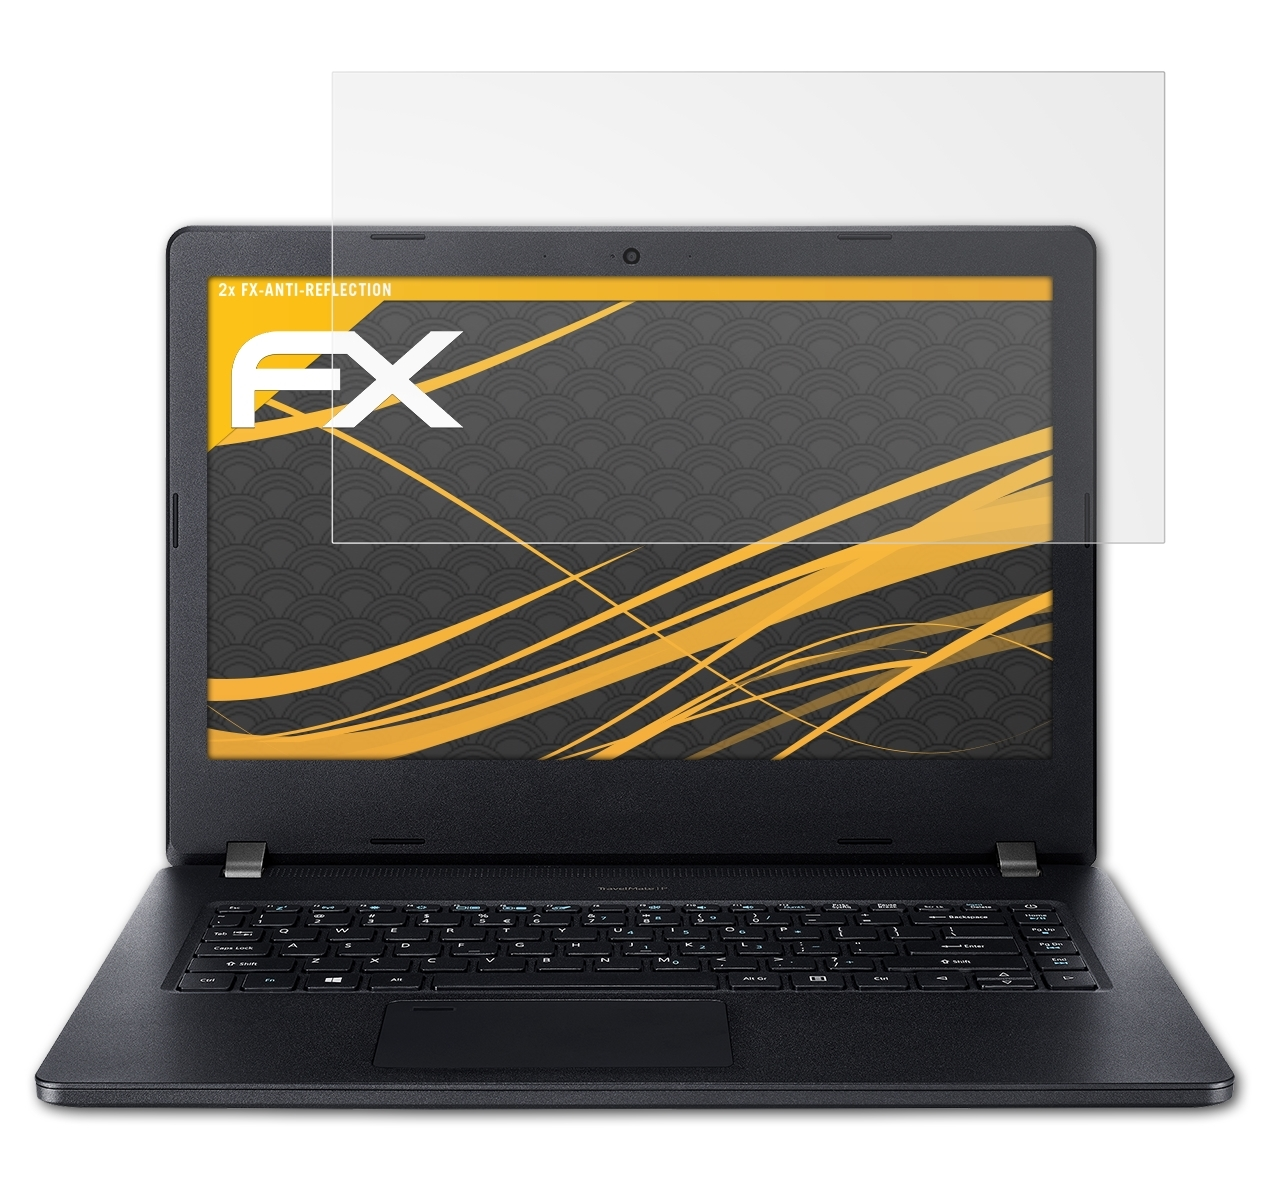 ATFOLIX 2x FX-Antireflex Displayschutz(für (P214-52)) P2 TravelMate Acer